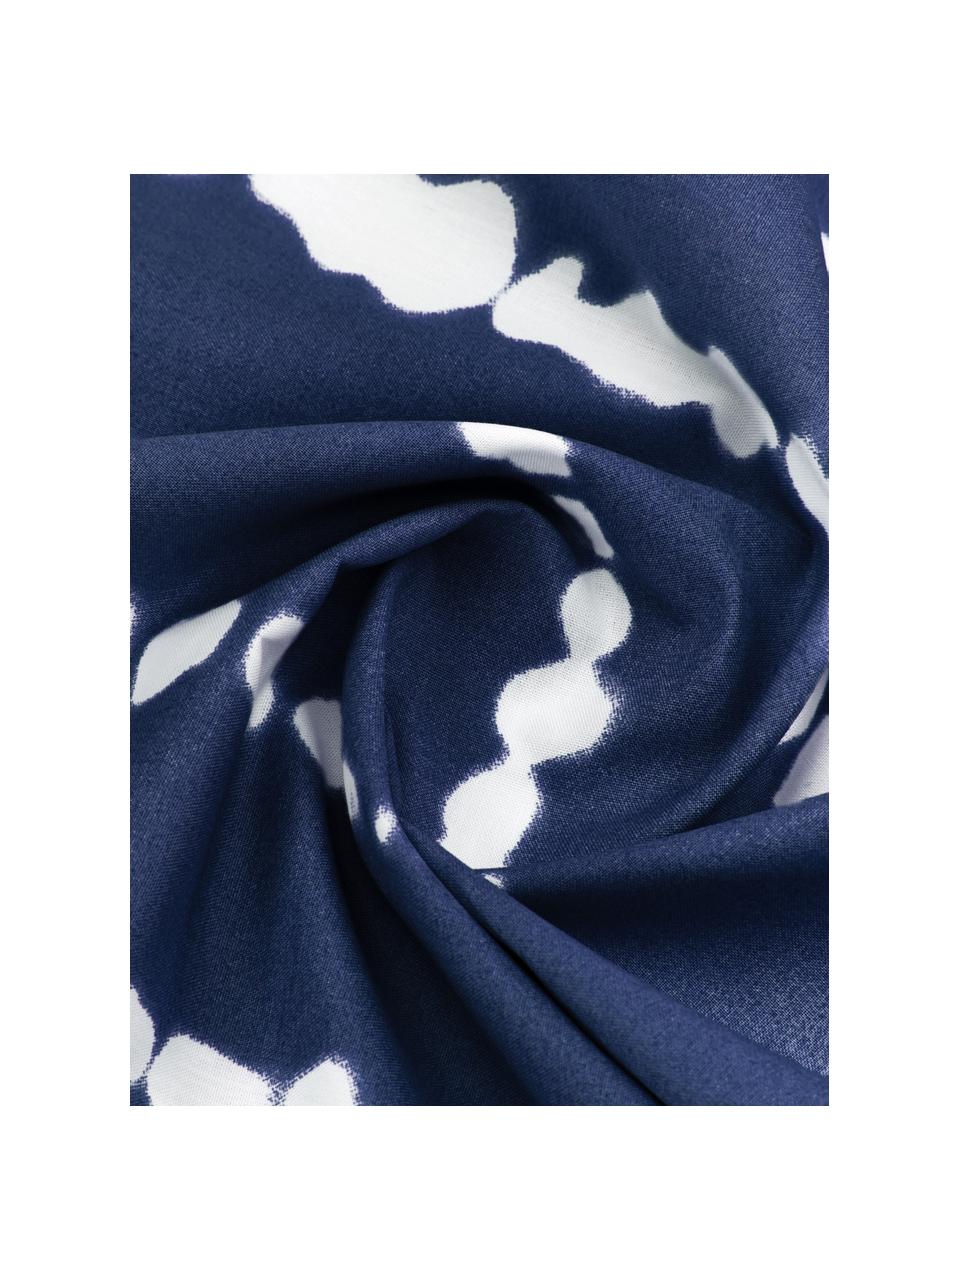 Perkal-Wendebettwäsche Remi aus Bio-Baumwolle mit Tie-Dye-Print, Webart: Perkal Fadendichte 180 TC, Blau,Weiß, 135 x 200 cm + 1 Kissen 80 x 80 cm